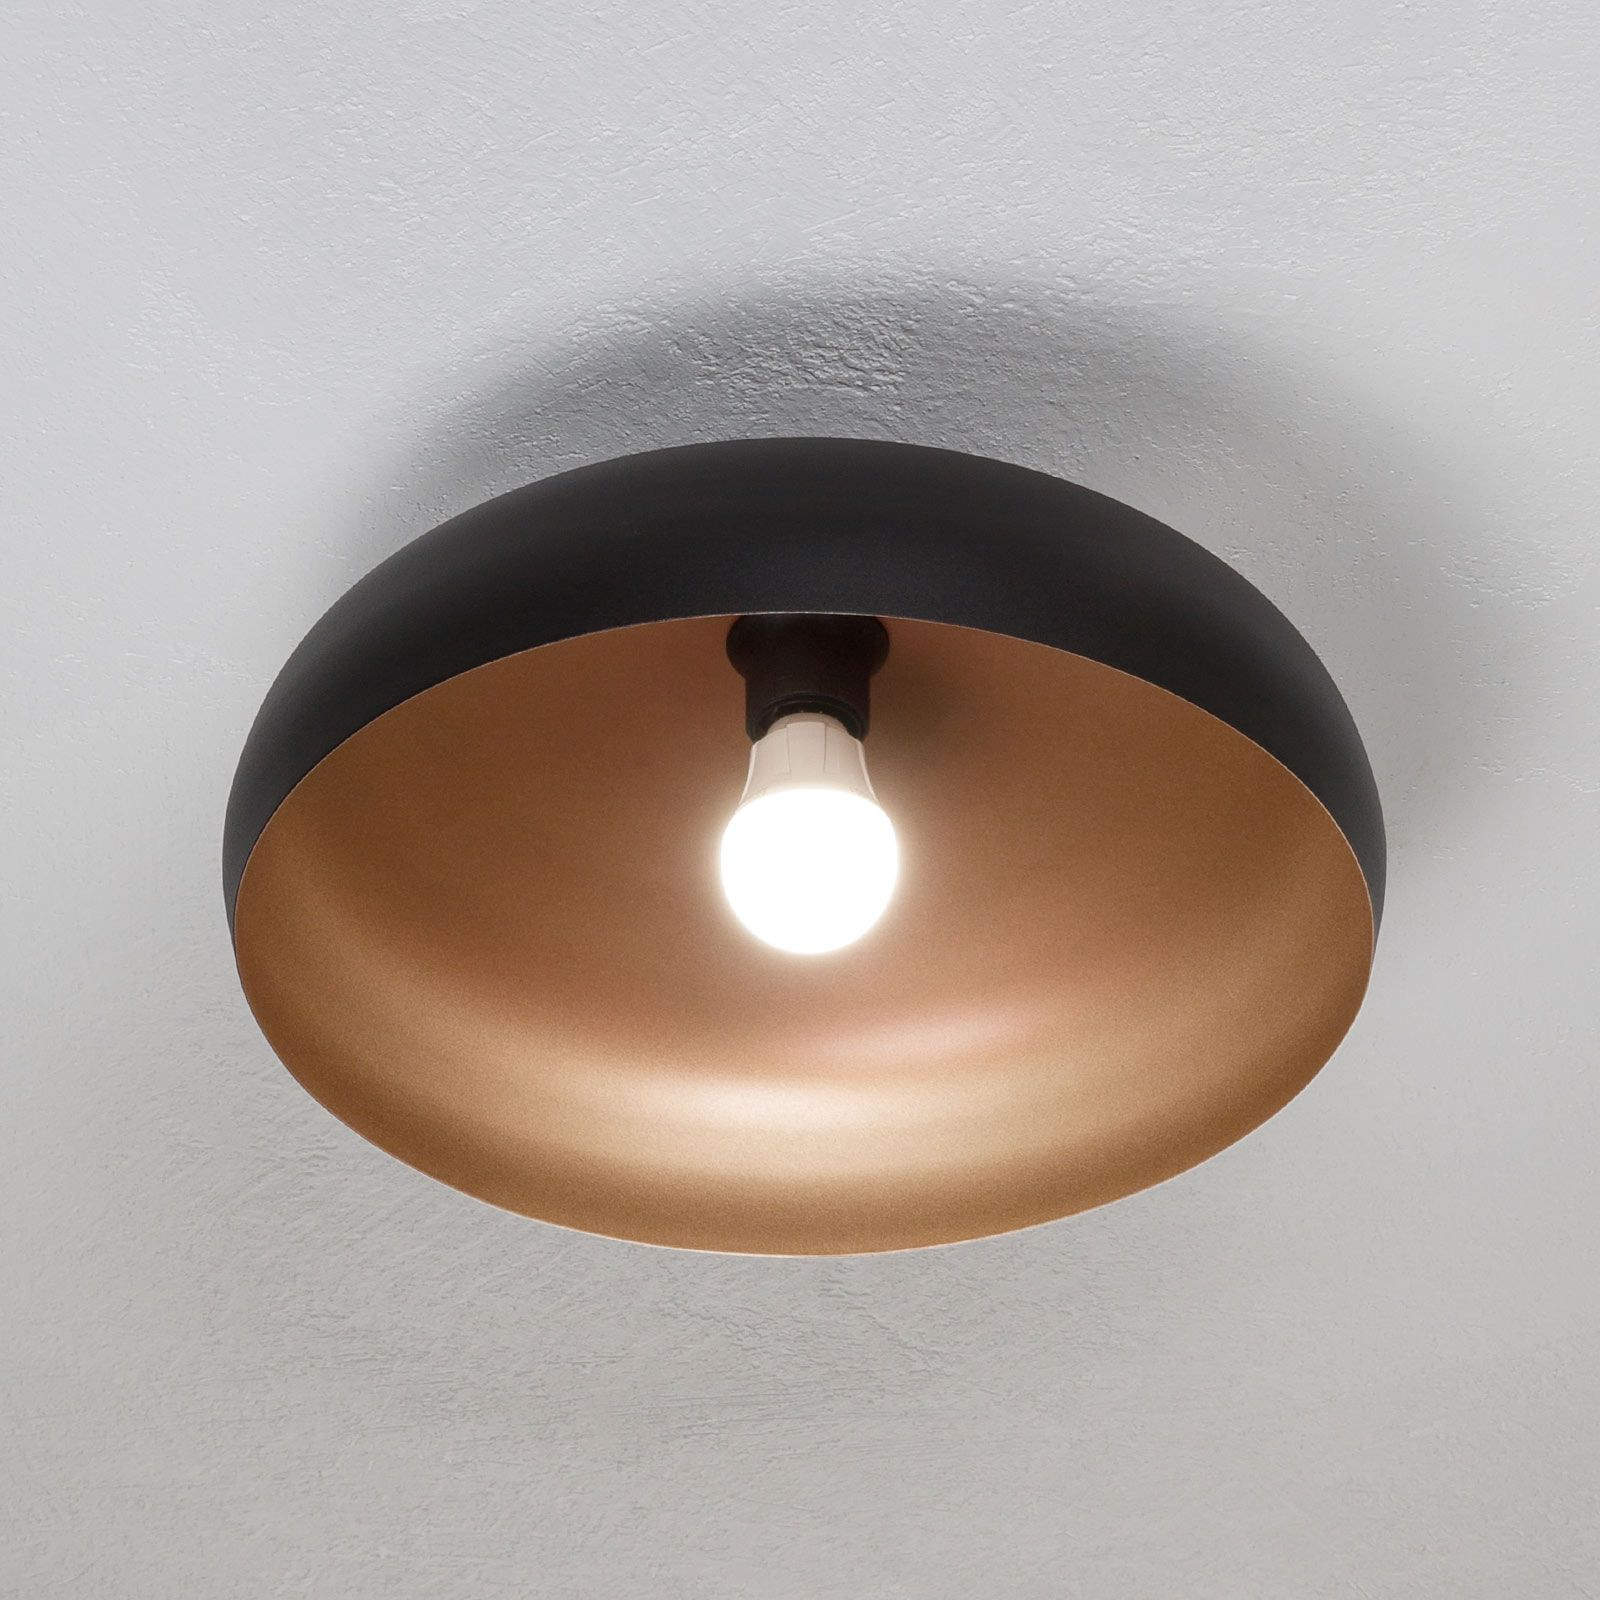 Mogano ceiling light made of metal, Ø 40 cm, black